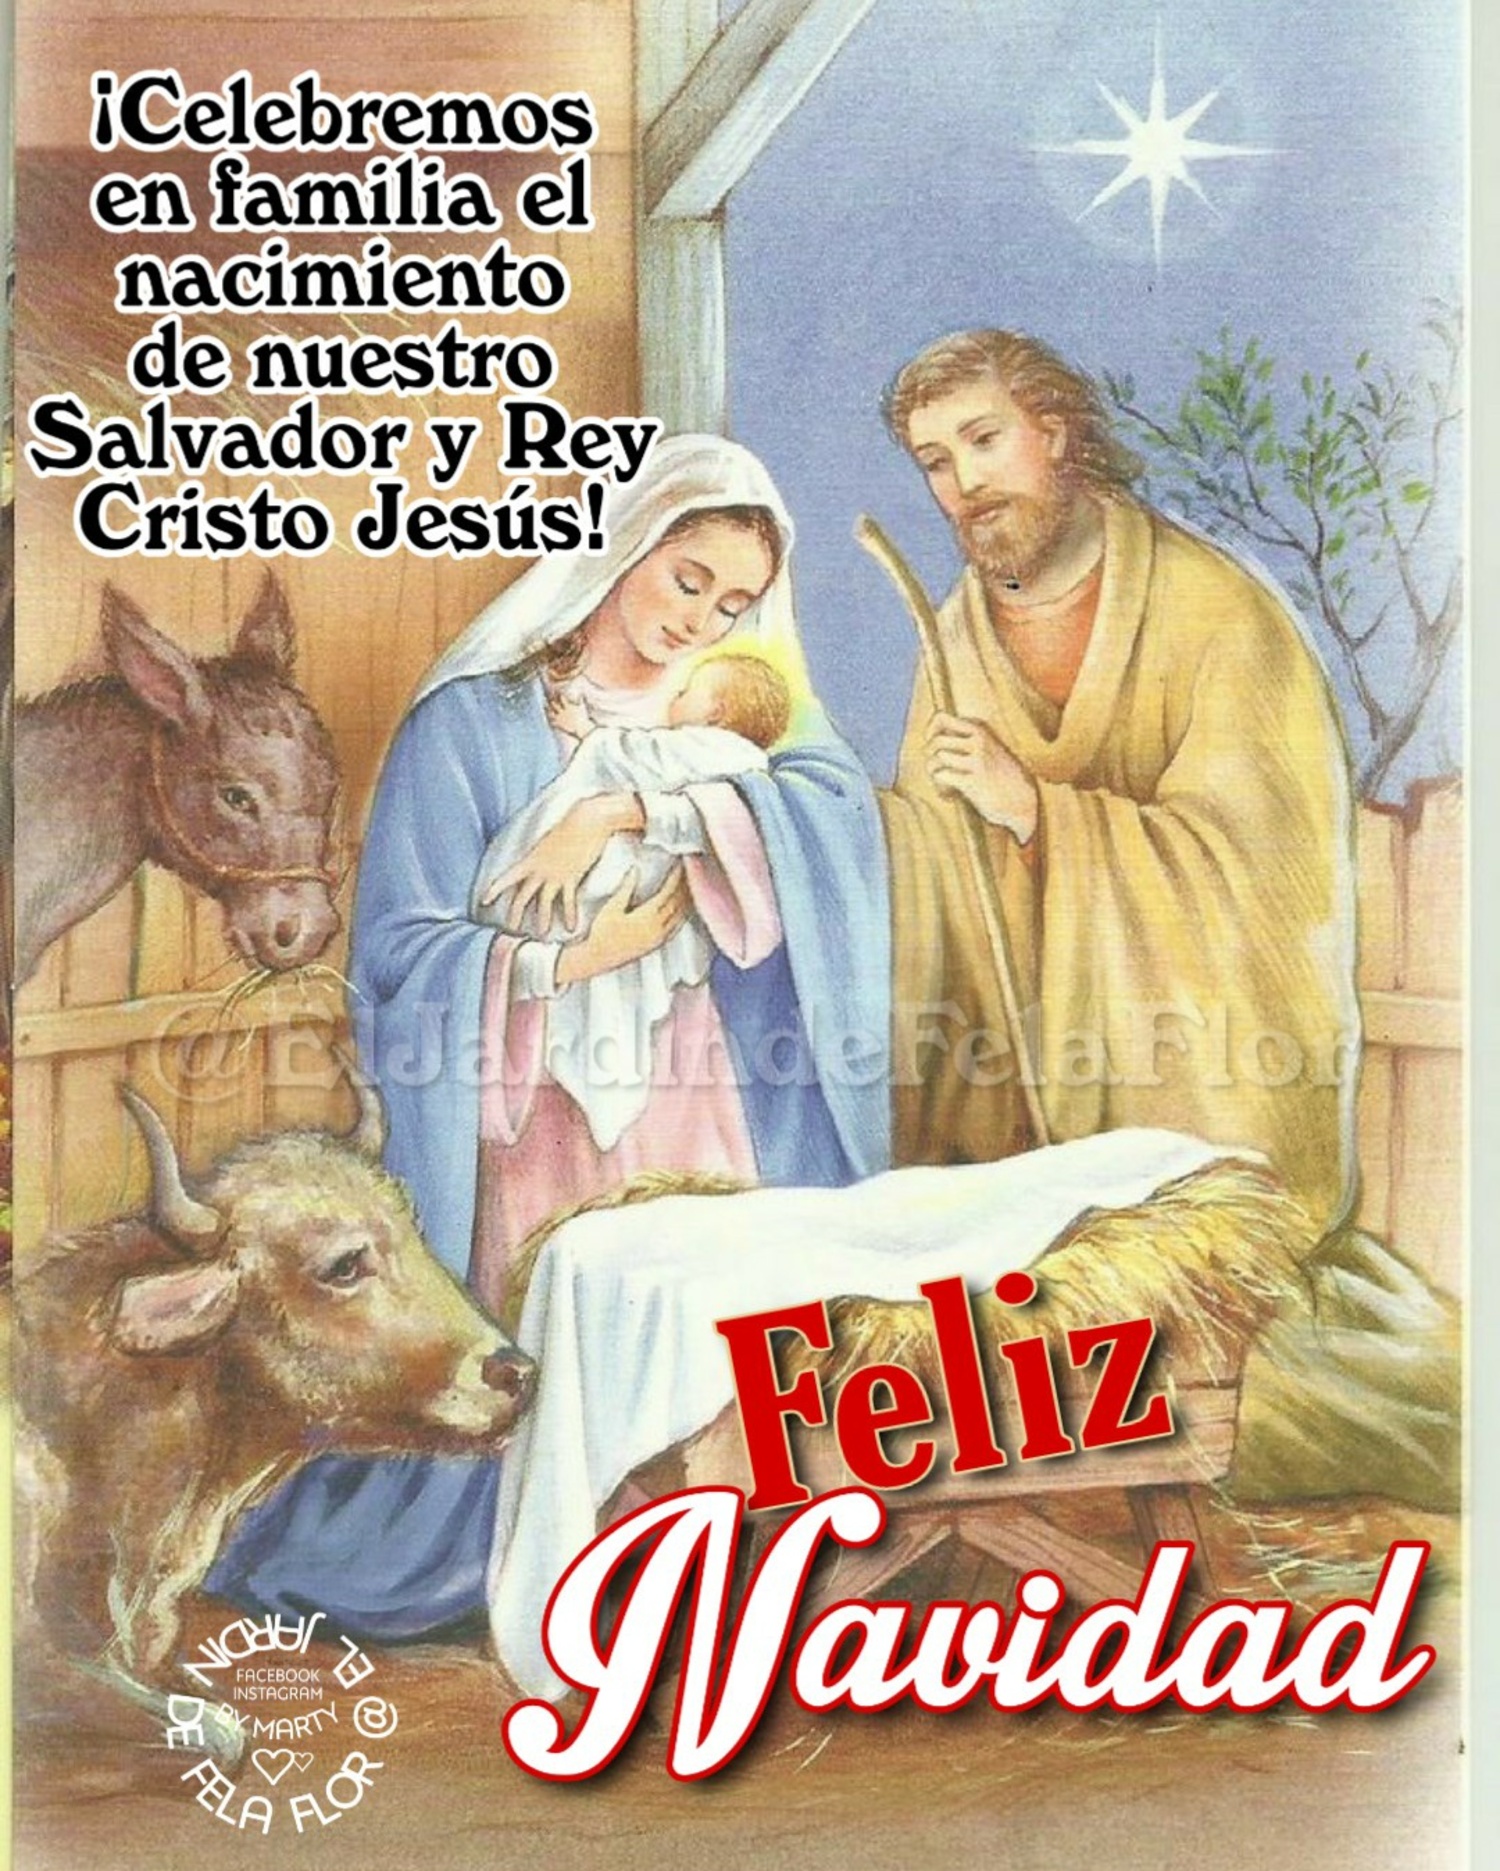 Celebremos en familia el nacimiento de nuestro Salvador y Rey Cristo Jesús